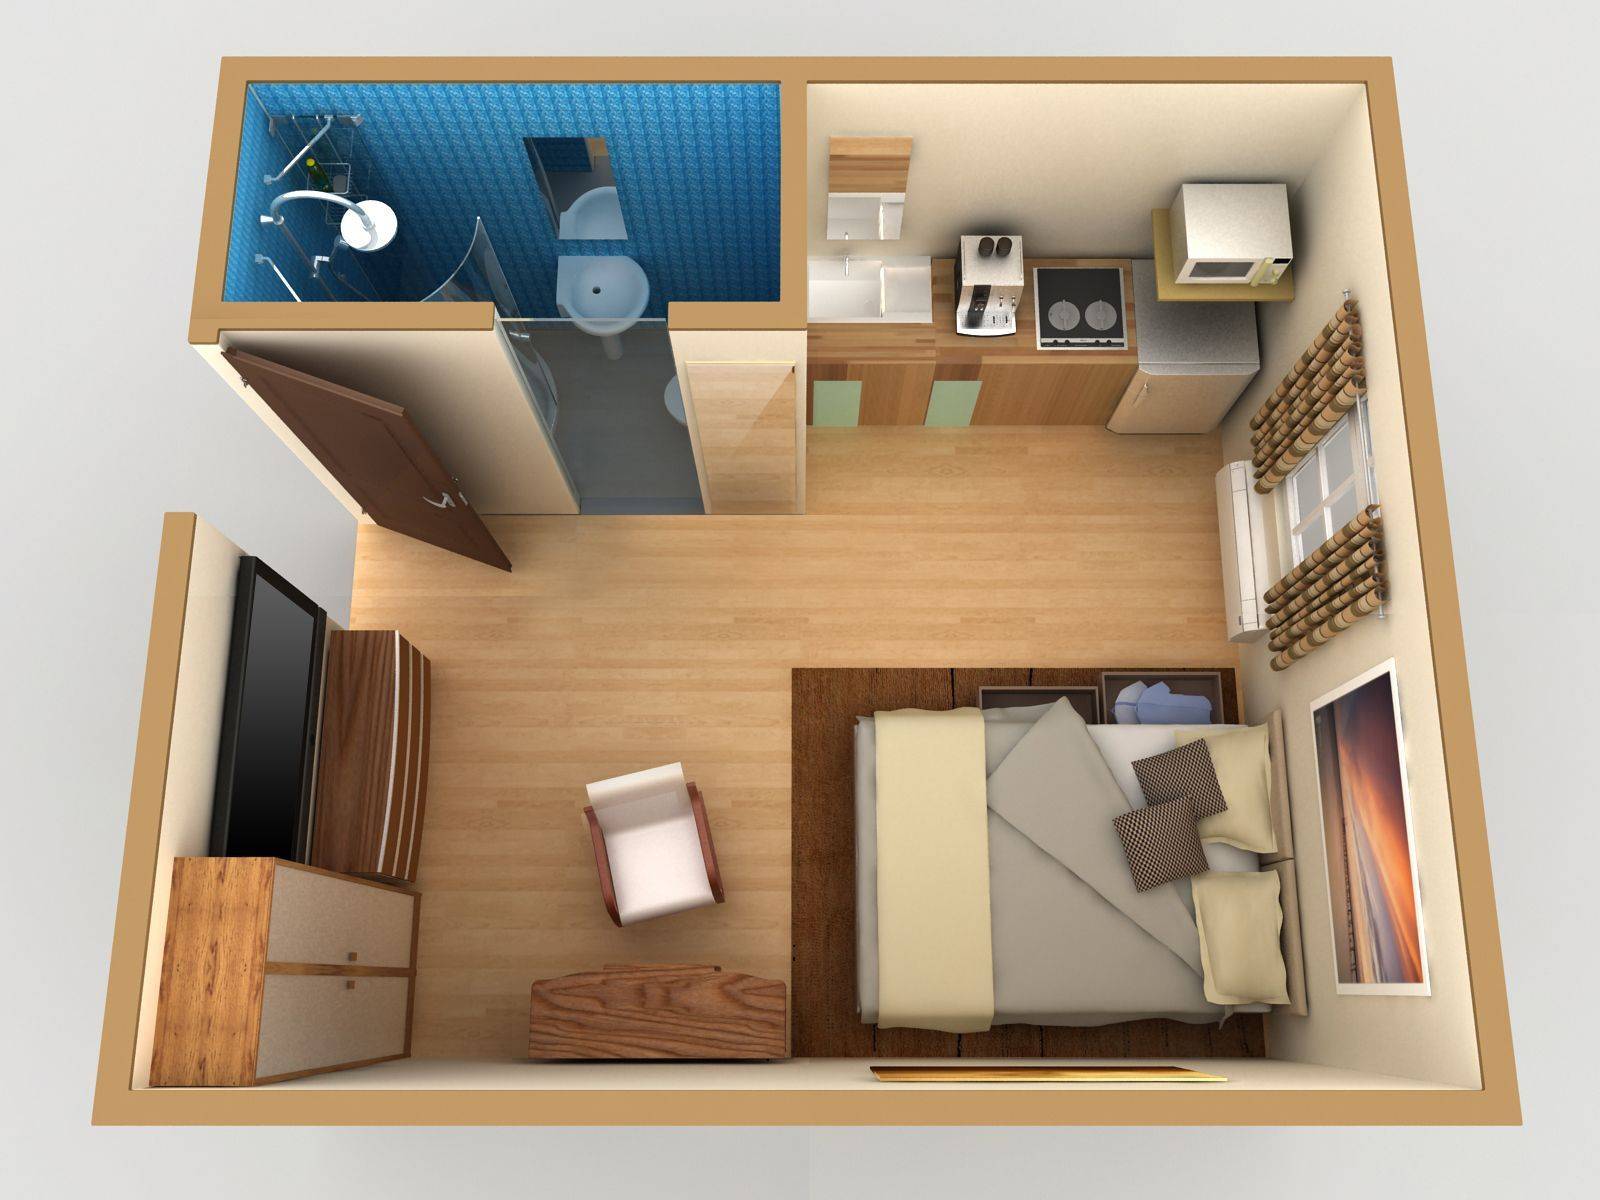 спальня 3х4 расстановка мебели дизайн